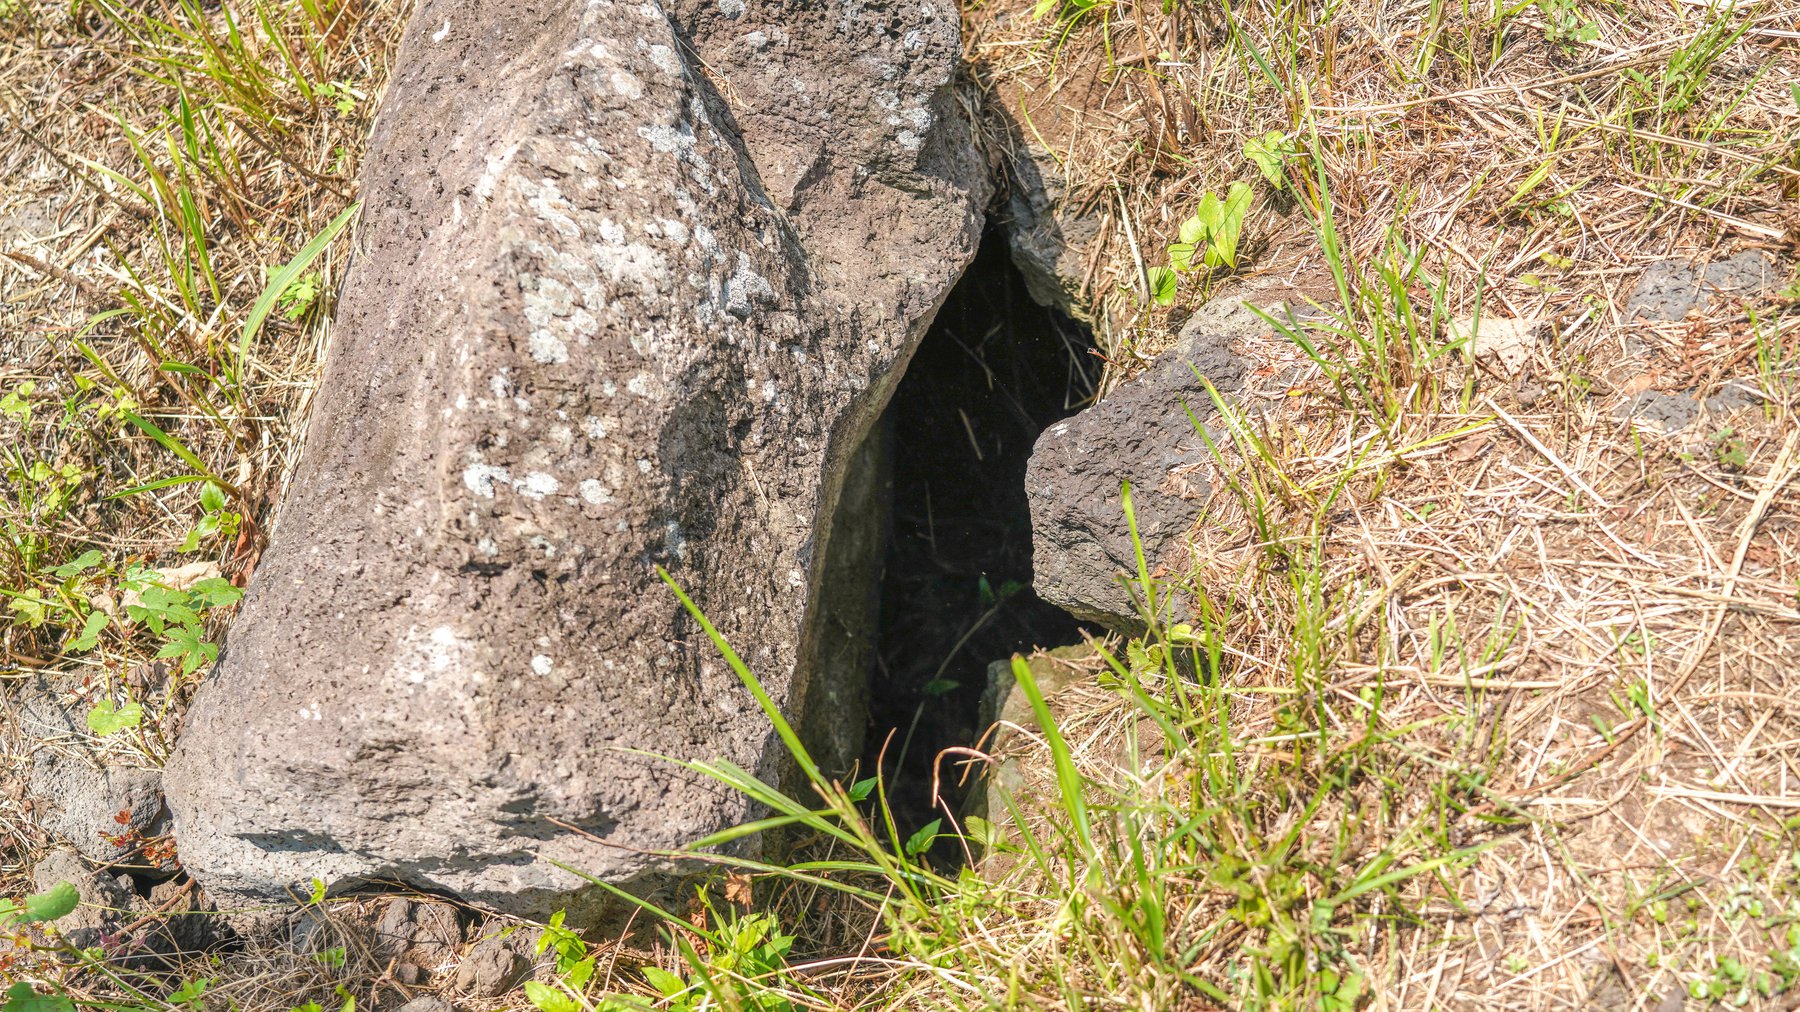 제주4·3유적지 다랑쉬굴 현장 모습. 굴 입구가 돌로 막혀있다.